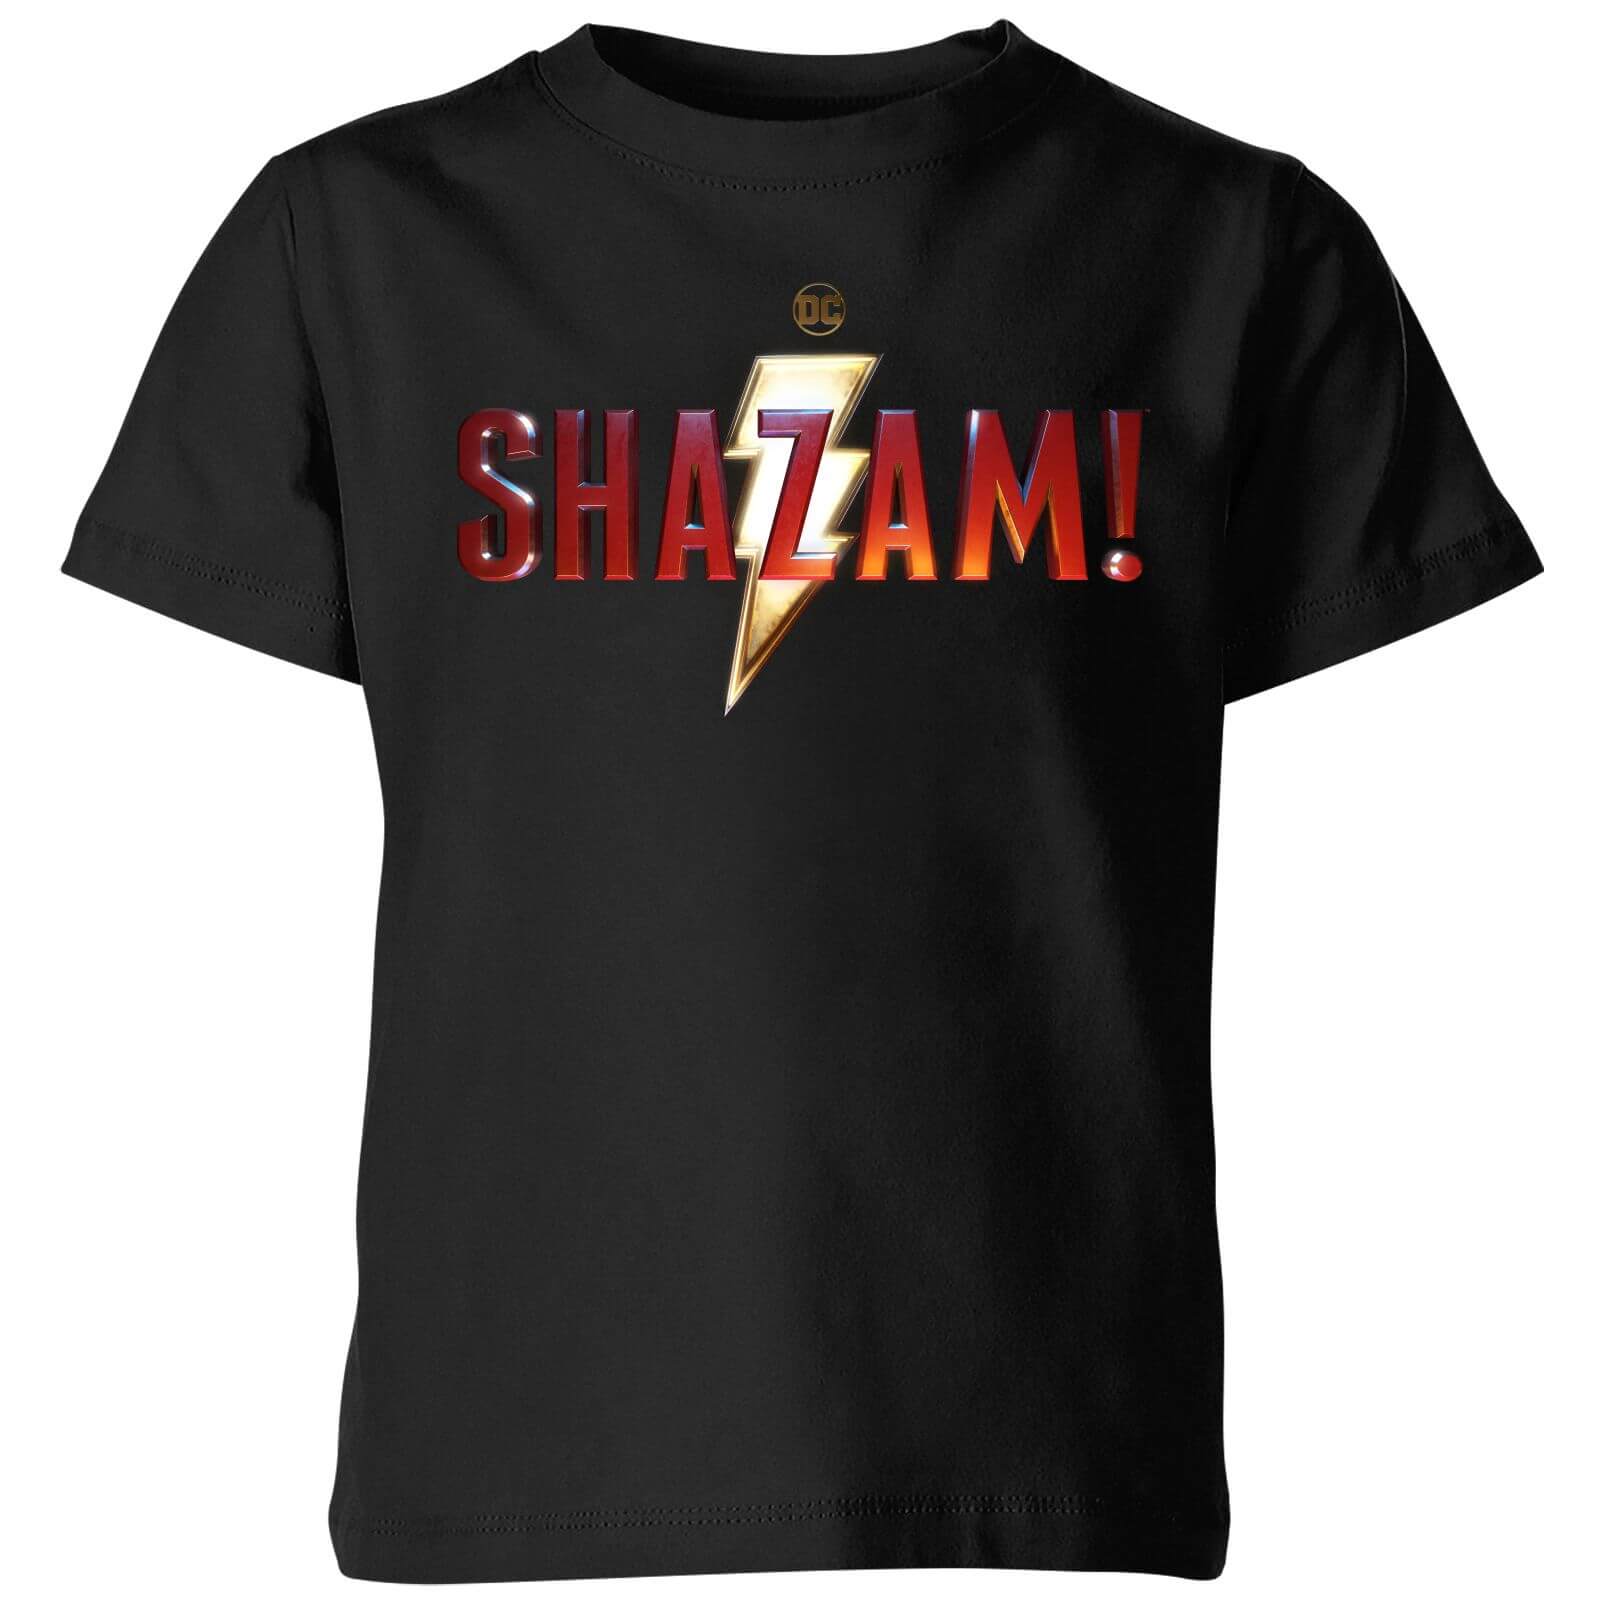 Shazam Logo Kids' T-Shirt - Black - 3-4 Years